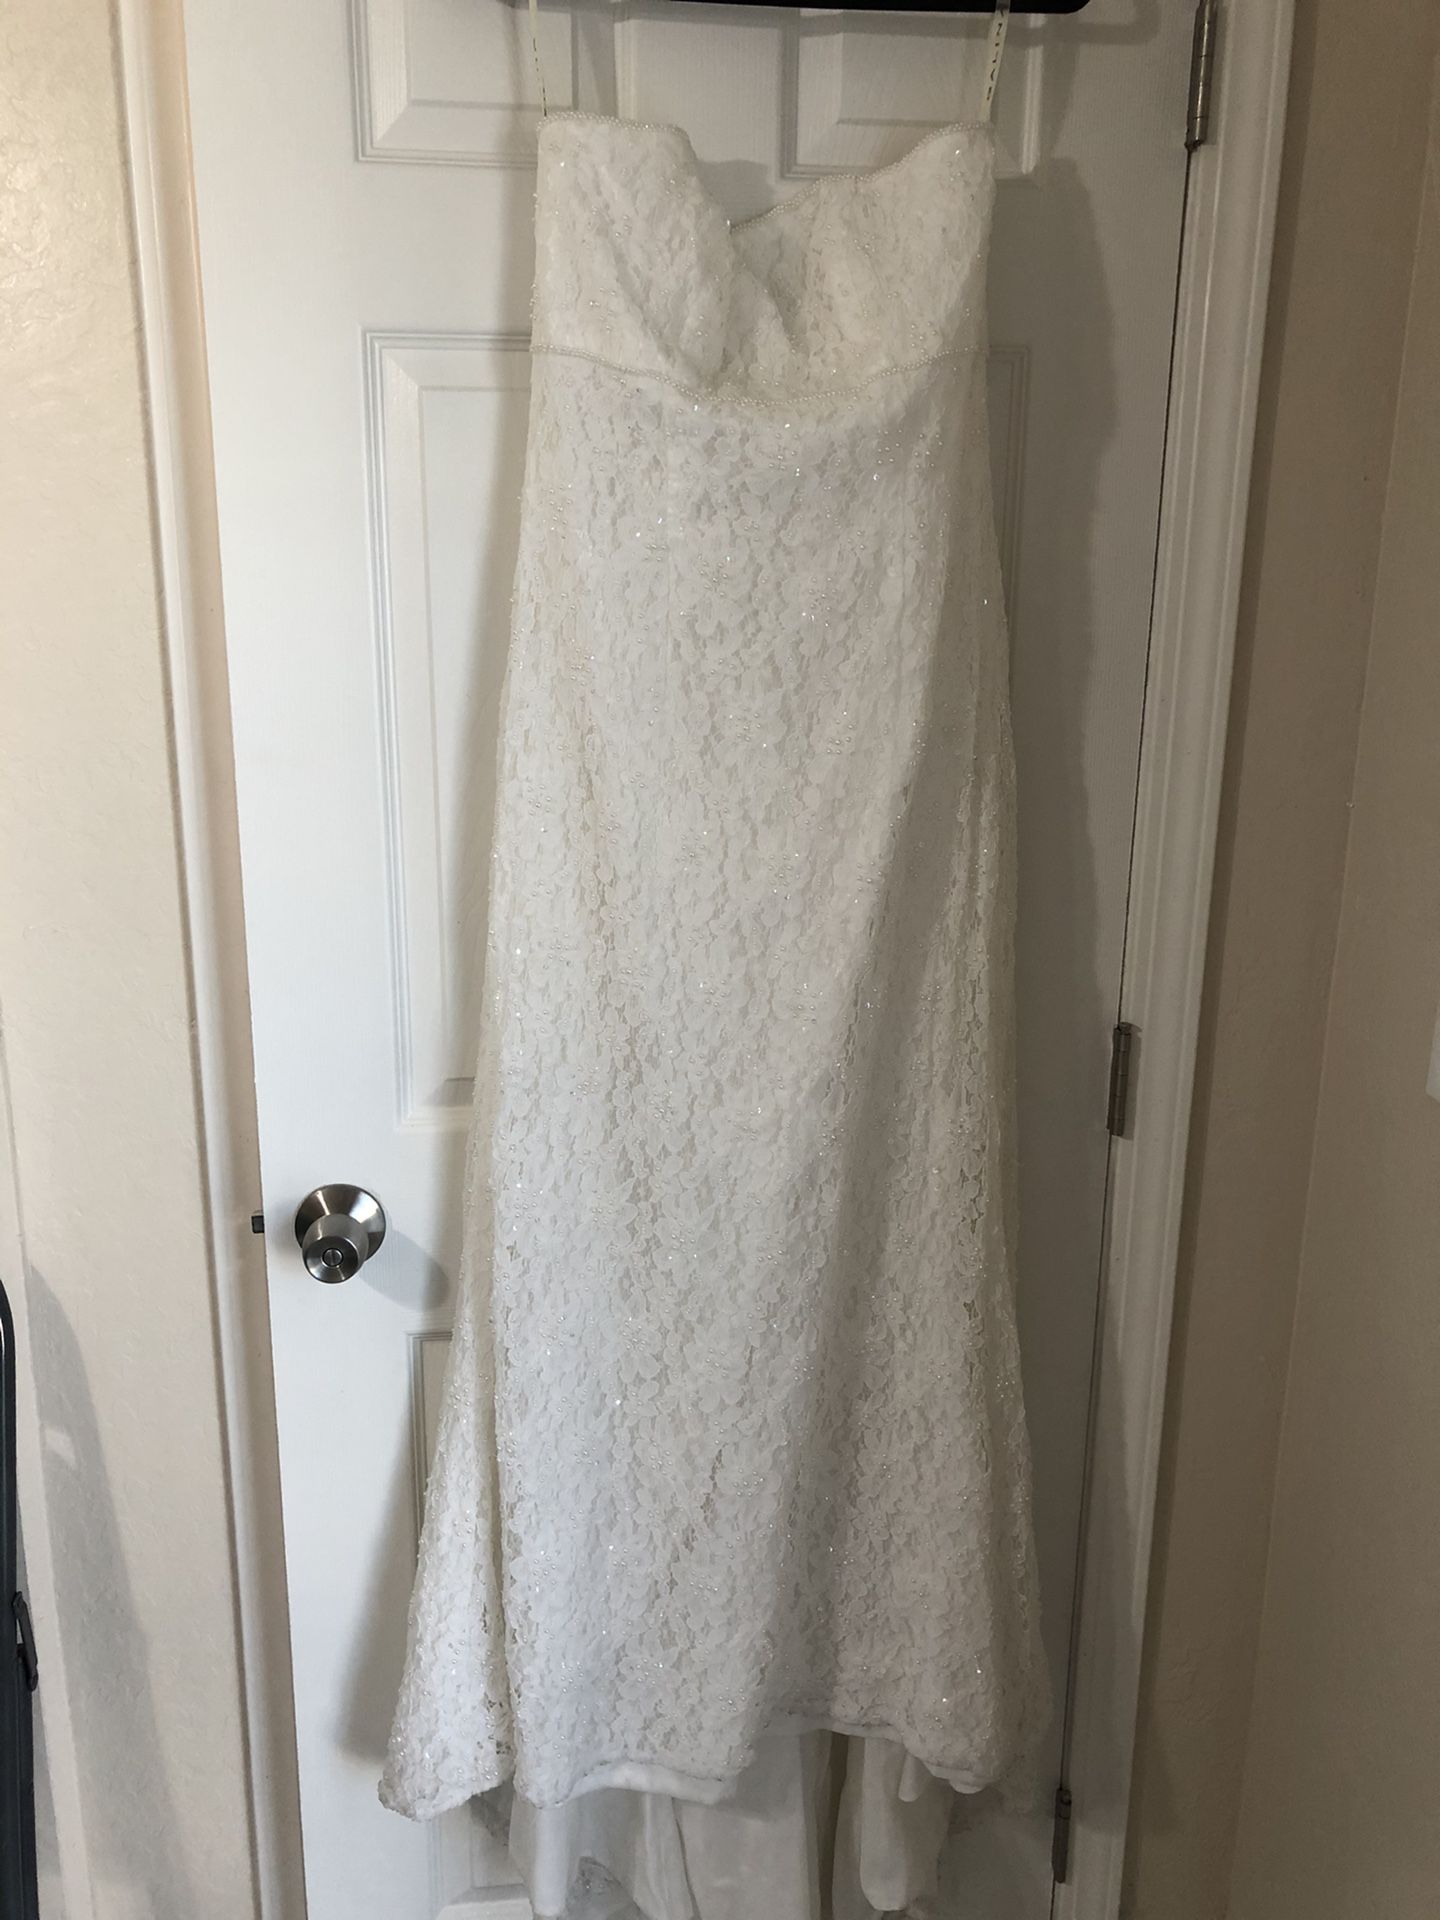 Strapless Wedding Gown